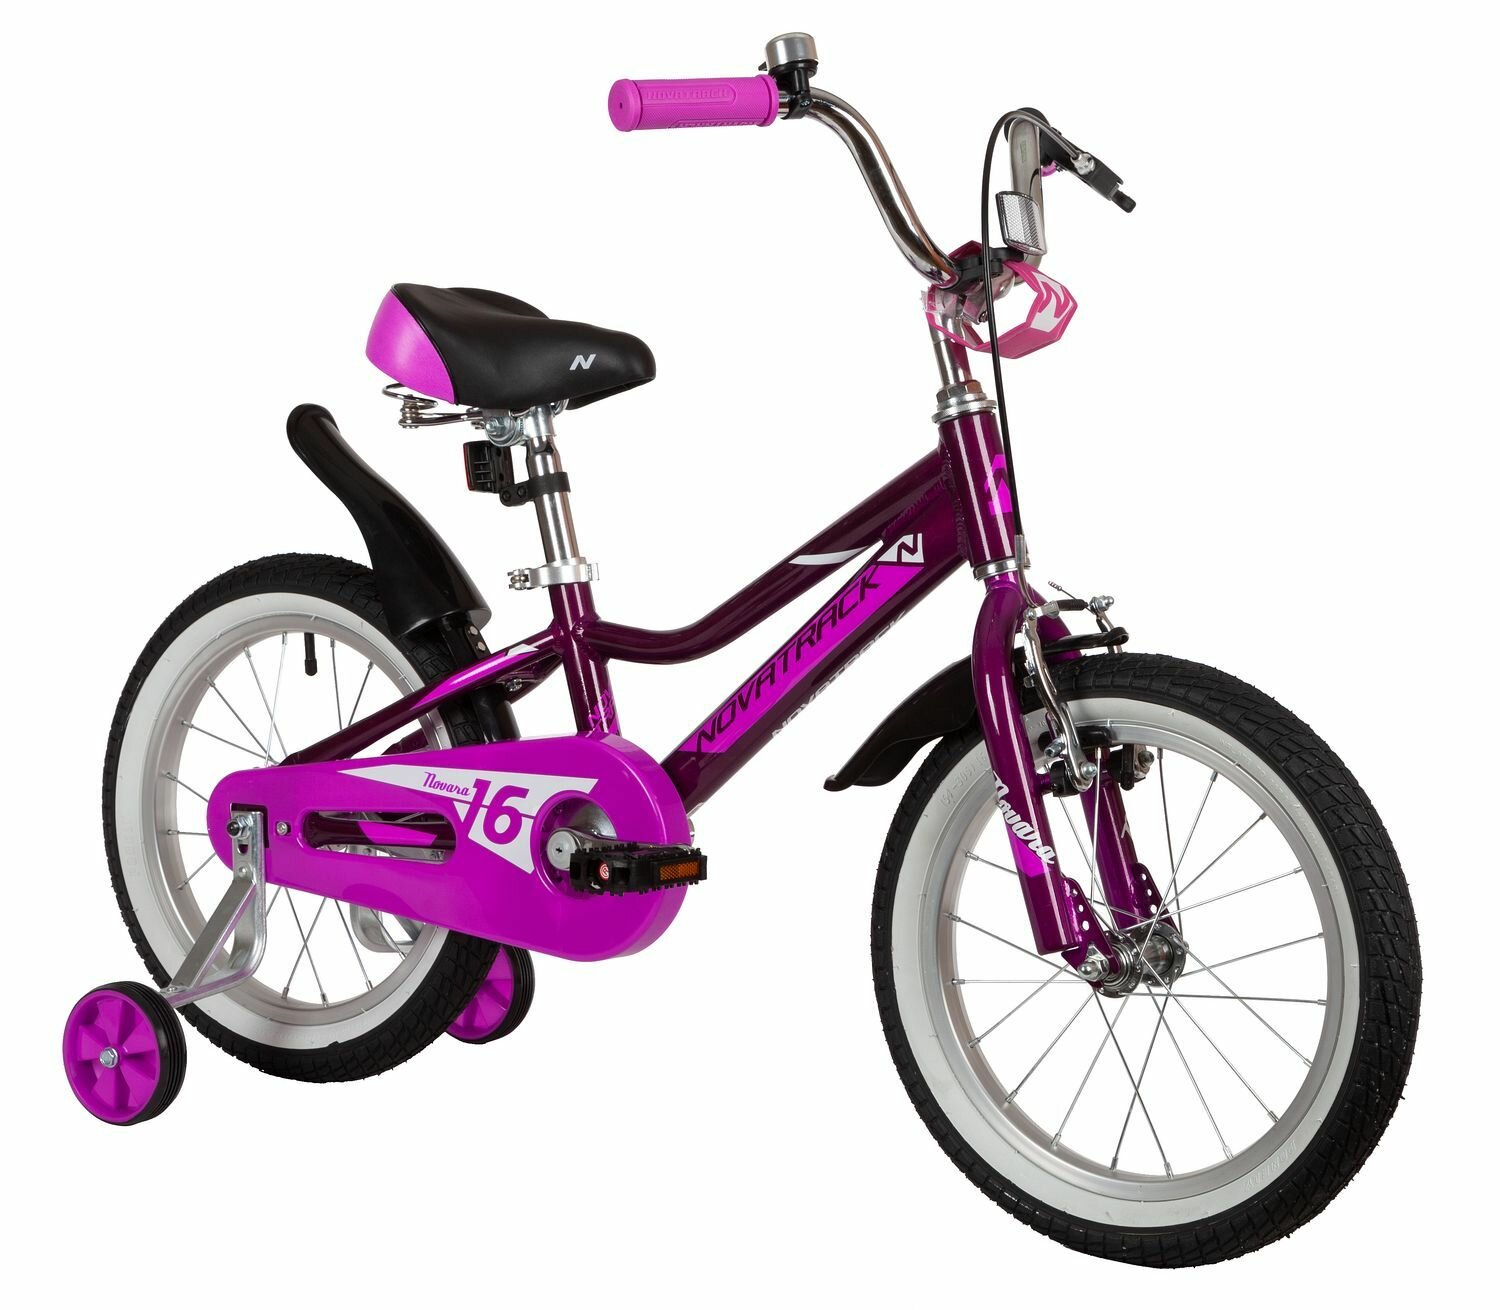 Велосипед детский NOVATRACK 16" NOVARA алюм, фиолетовый, пер. руч, зад. нож. тормоз, короткие крылья, полная защита цепи